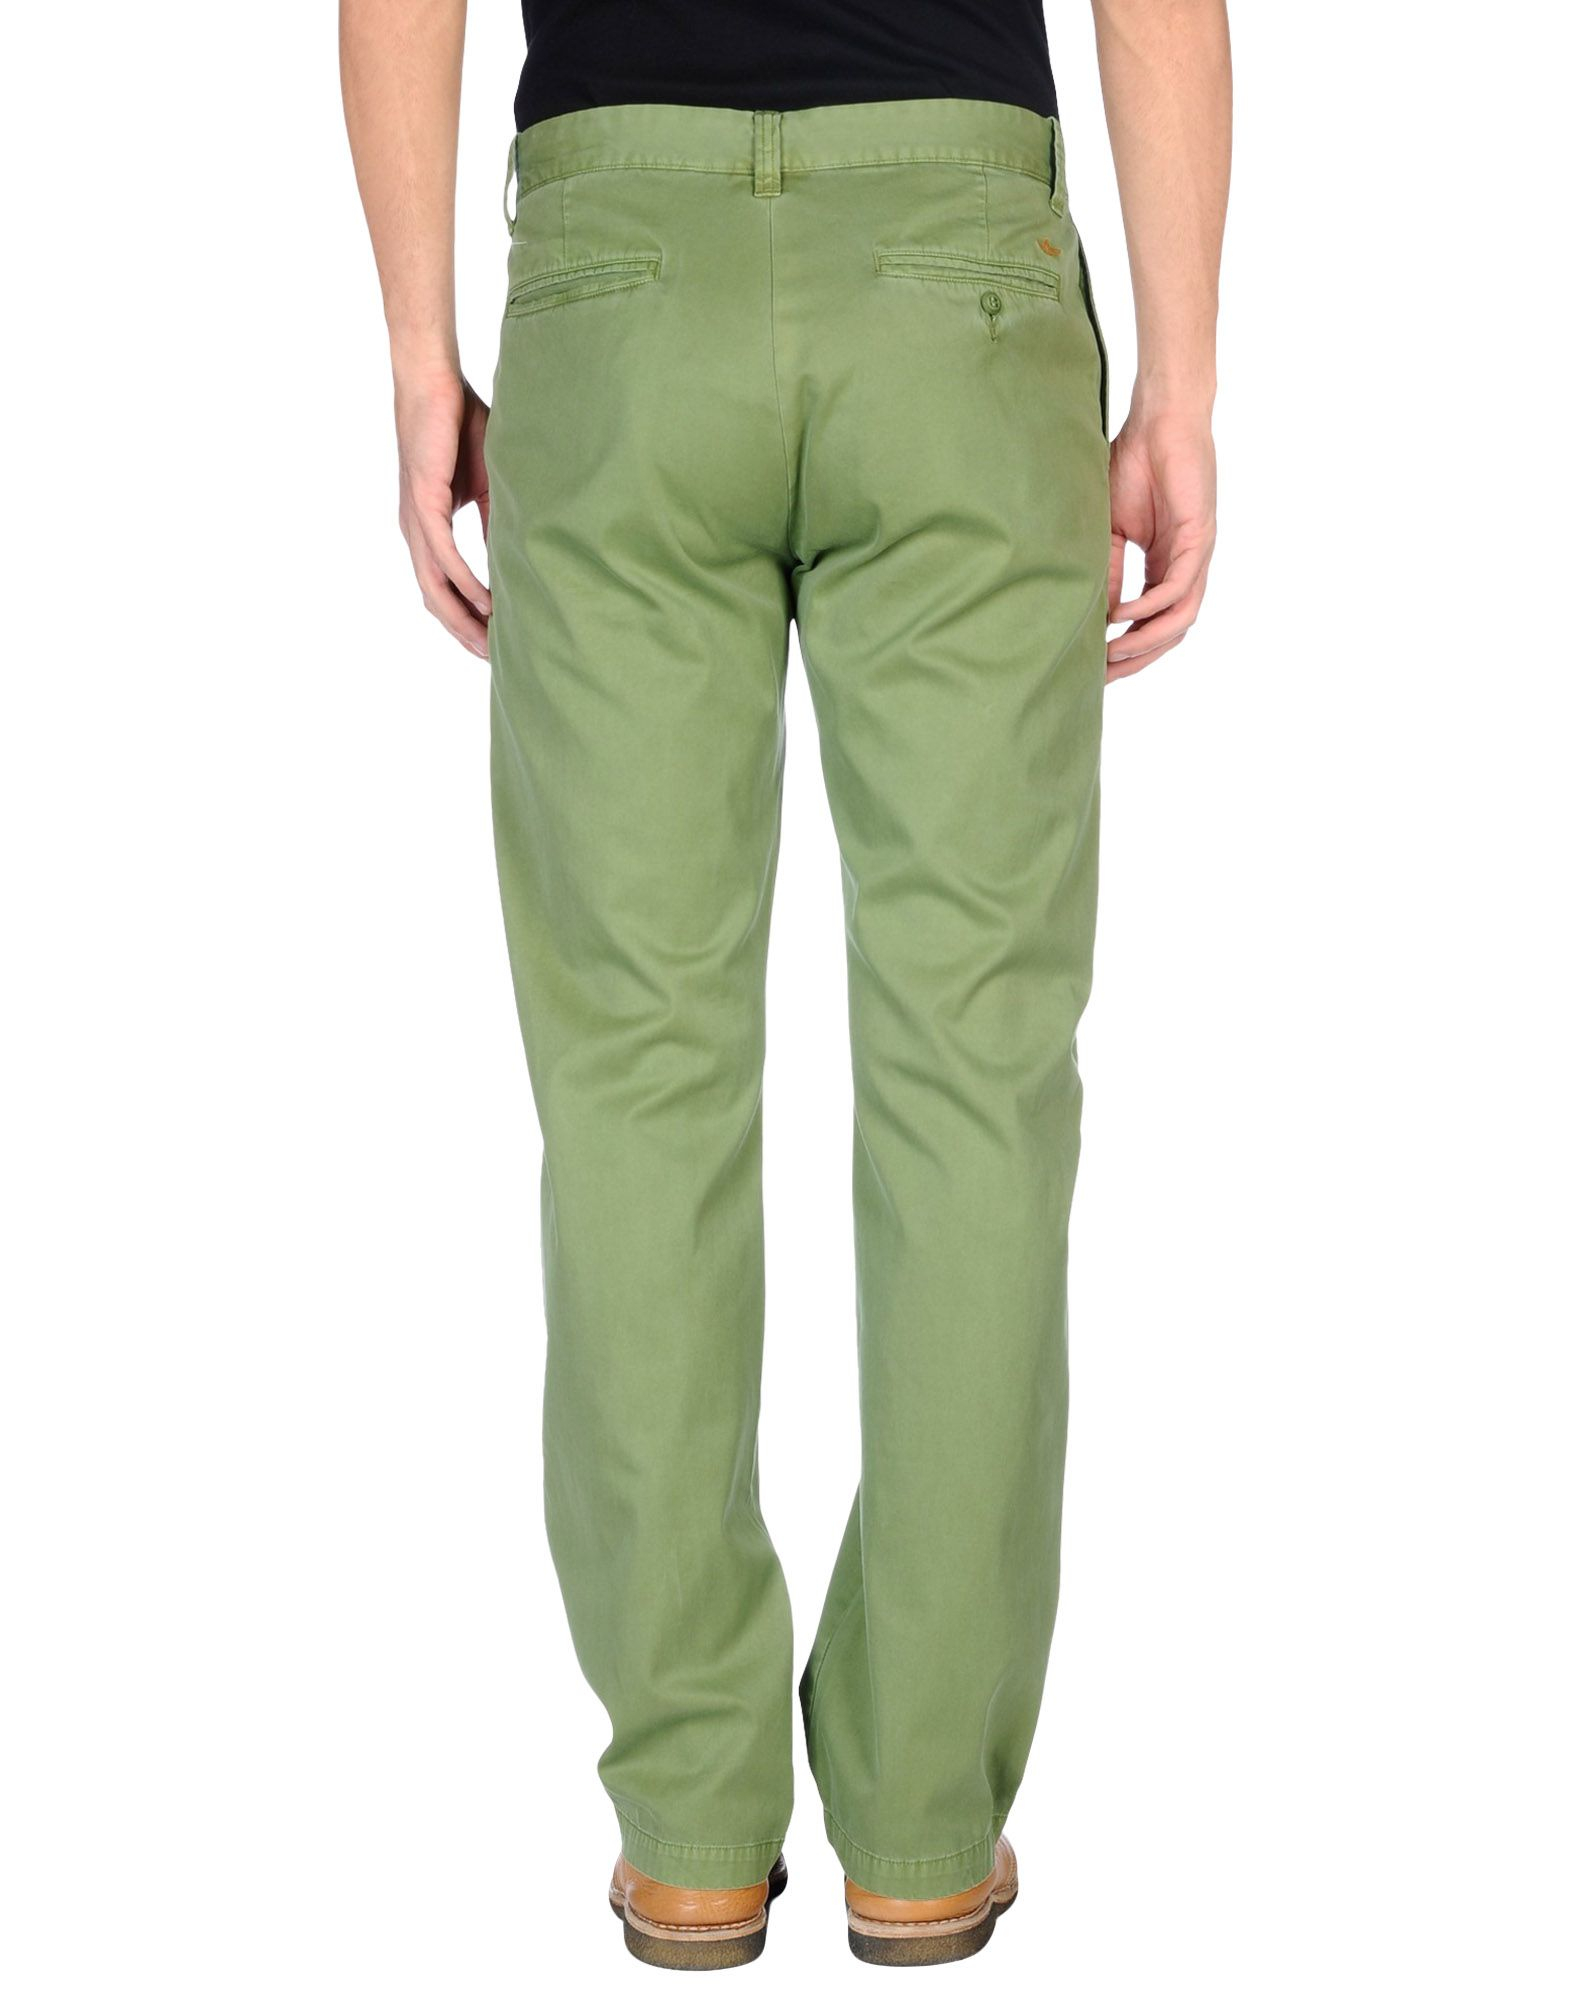 Lyst - Dockers Casual Trouser in Green for Men